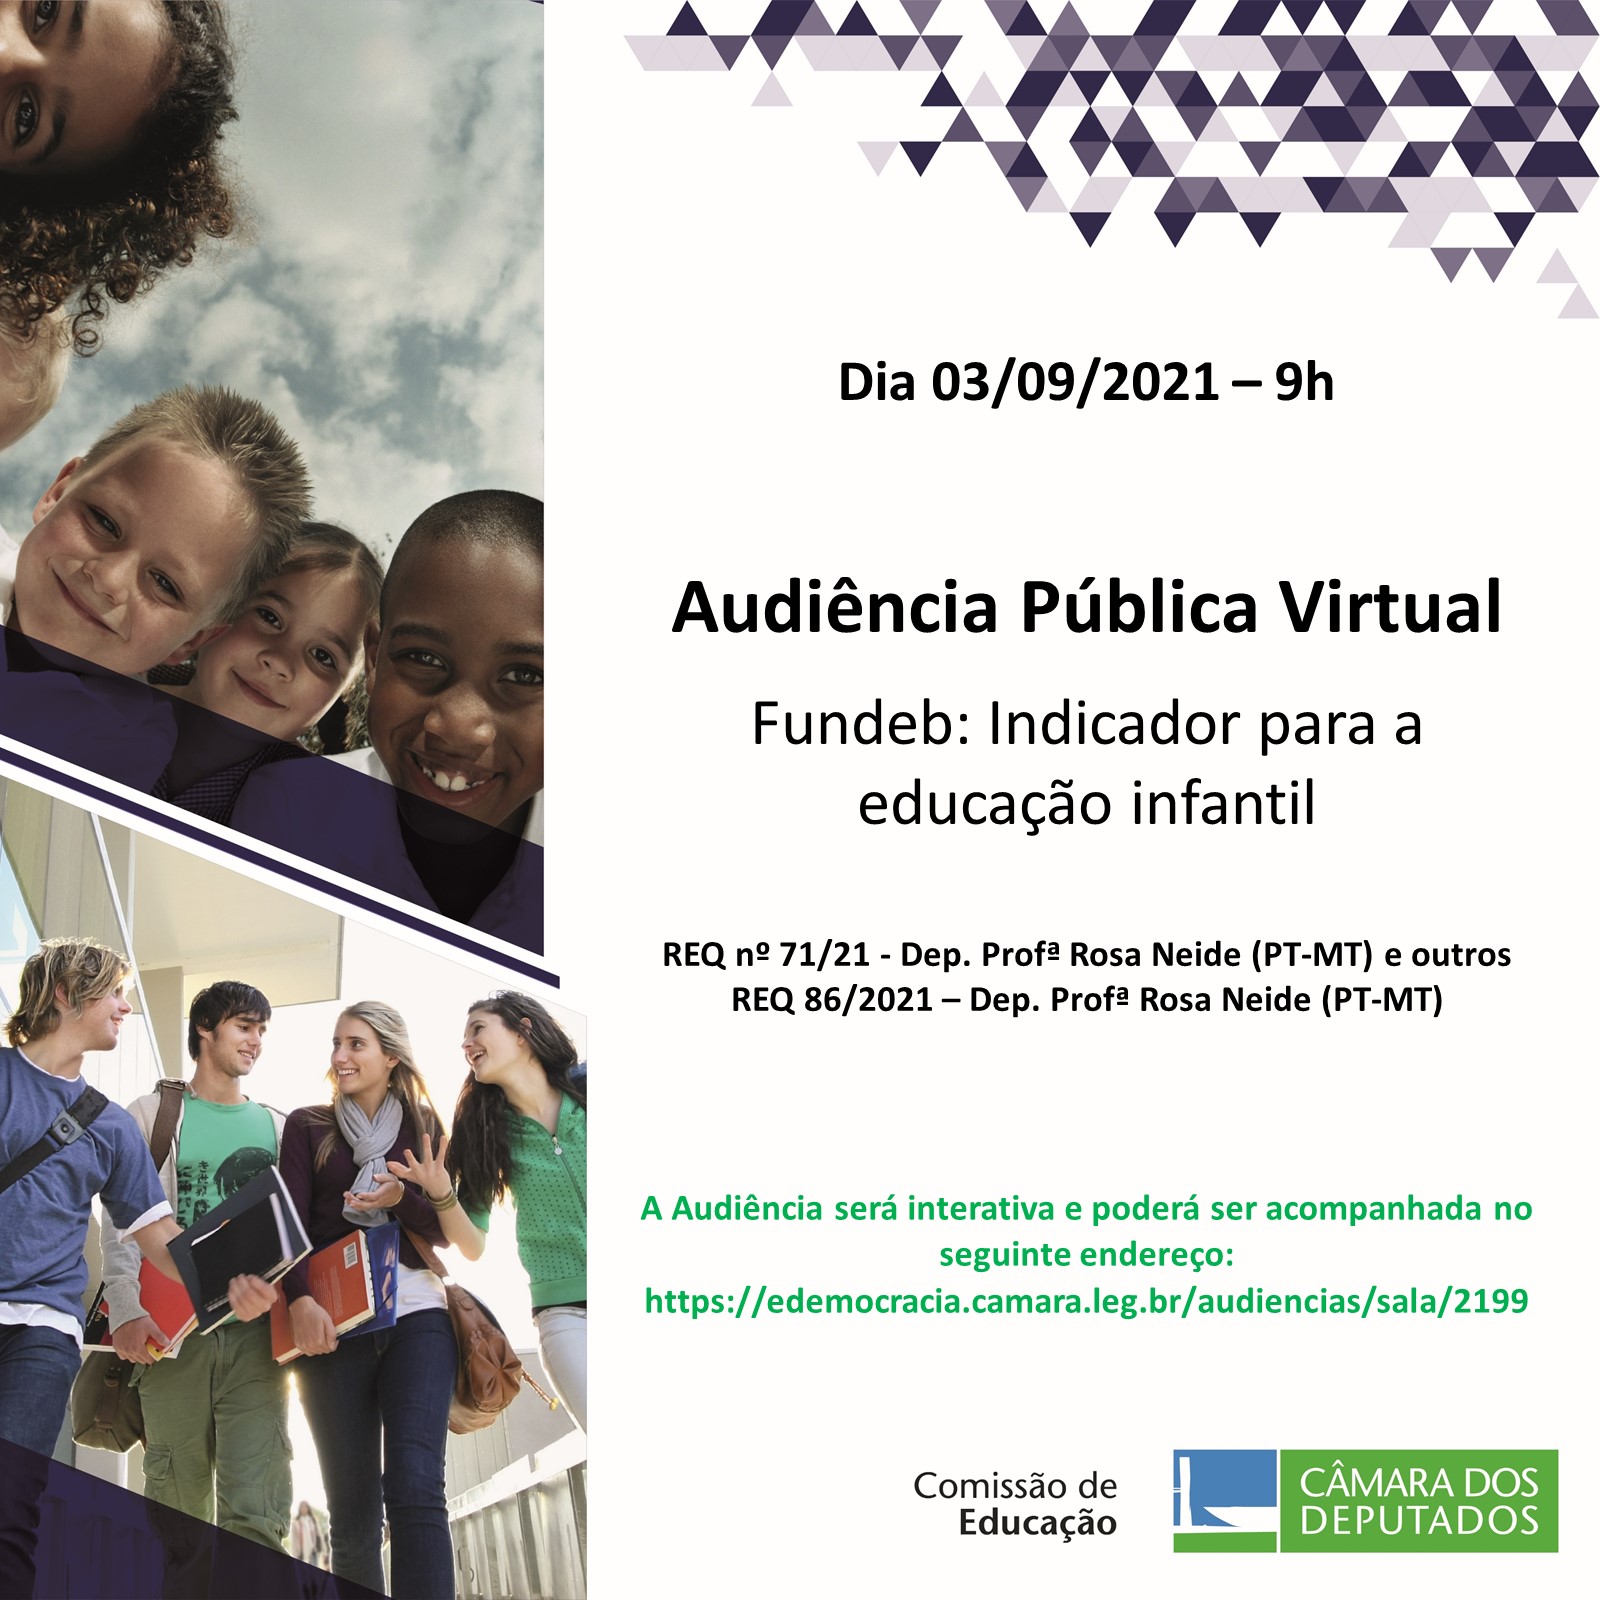 Participe da Audiência Pública, em 03/09/21, sobre: "Fundeb: Indicador para educação infantil".